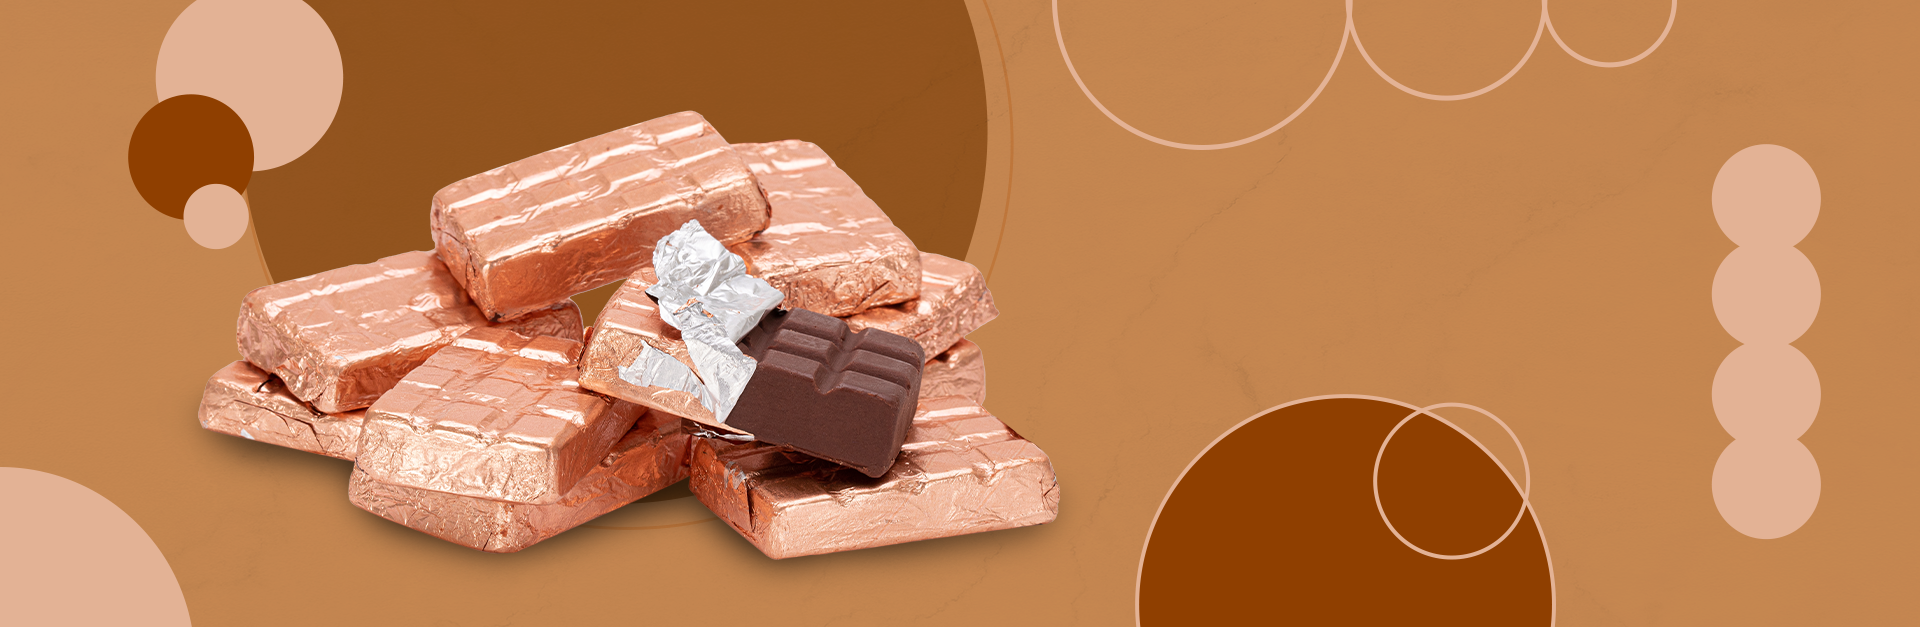 banner-beneficios-chocolate-funcional